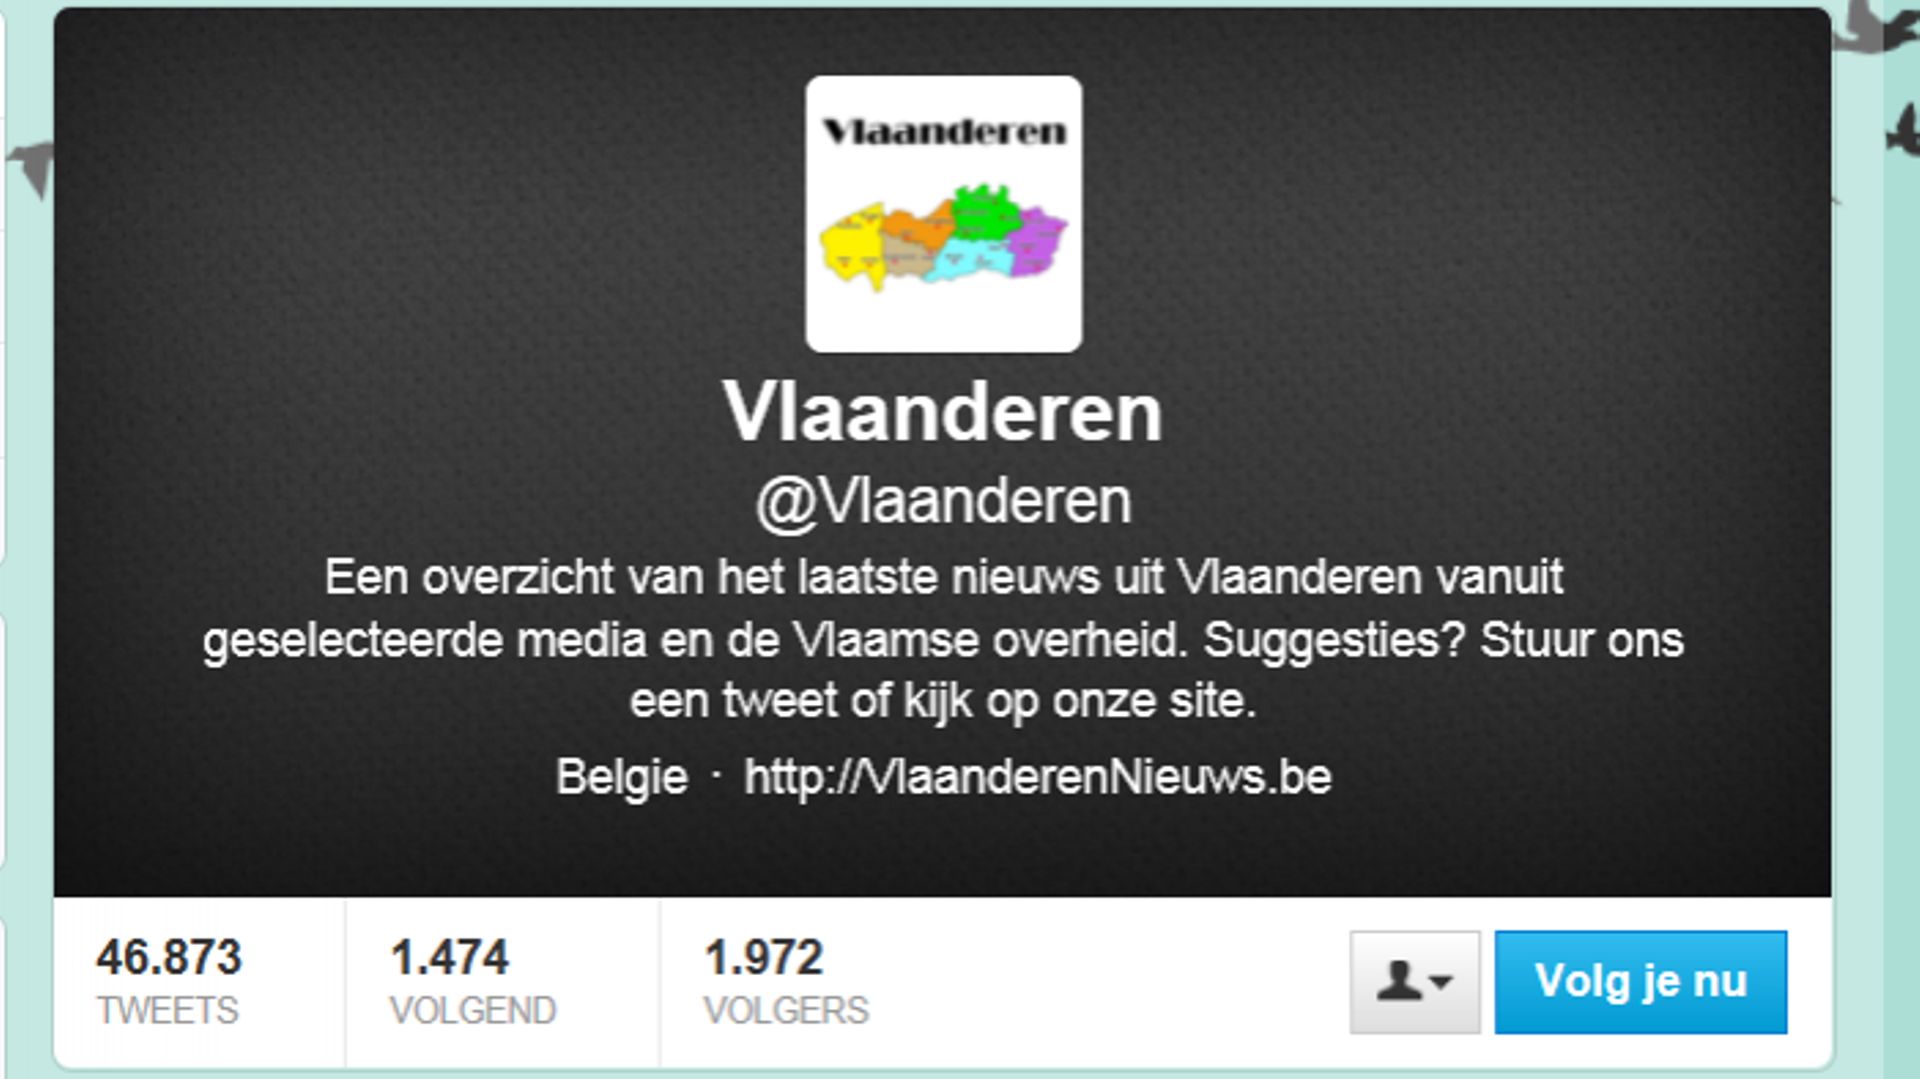 Les fonctionnaires flamands devront twitter en néerlandais